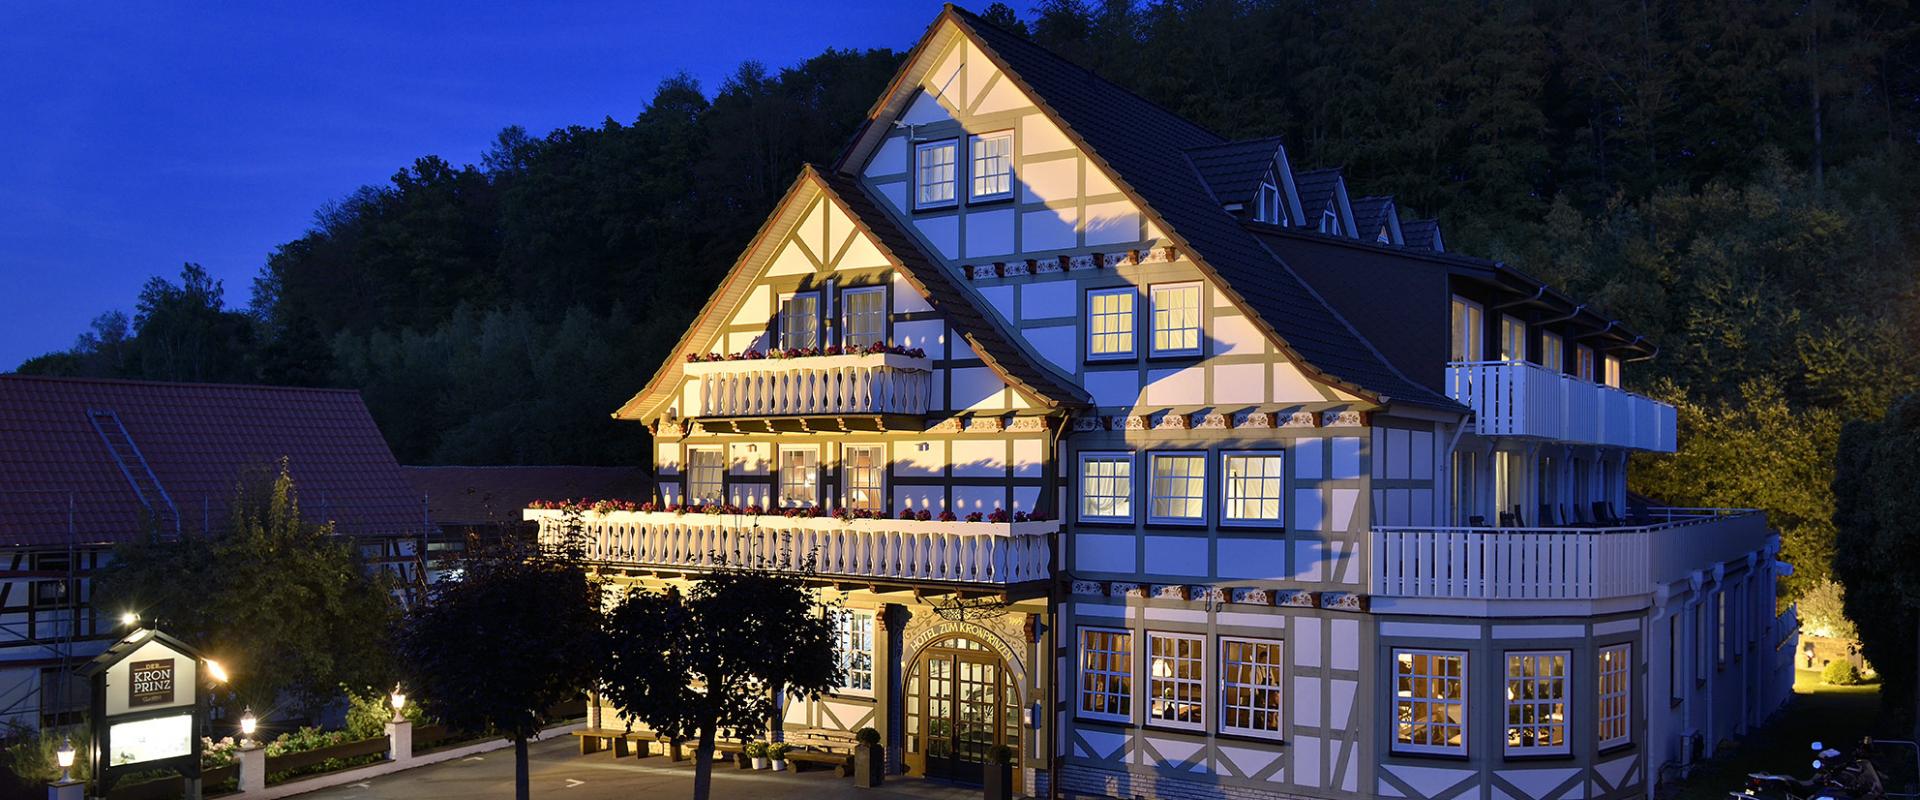 15971 Biker Hotel Der Kronprinz im Harz/Eichsfeld/Kyffhäuser.jpg